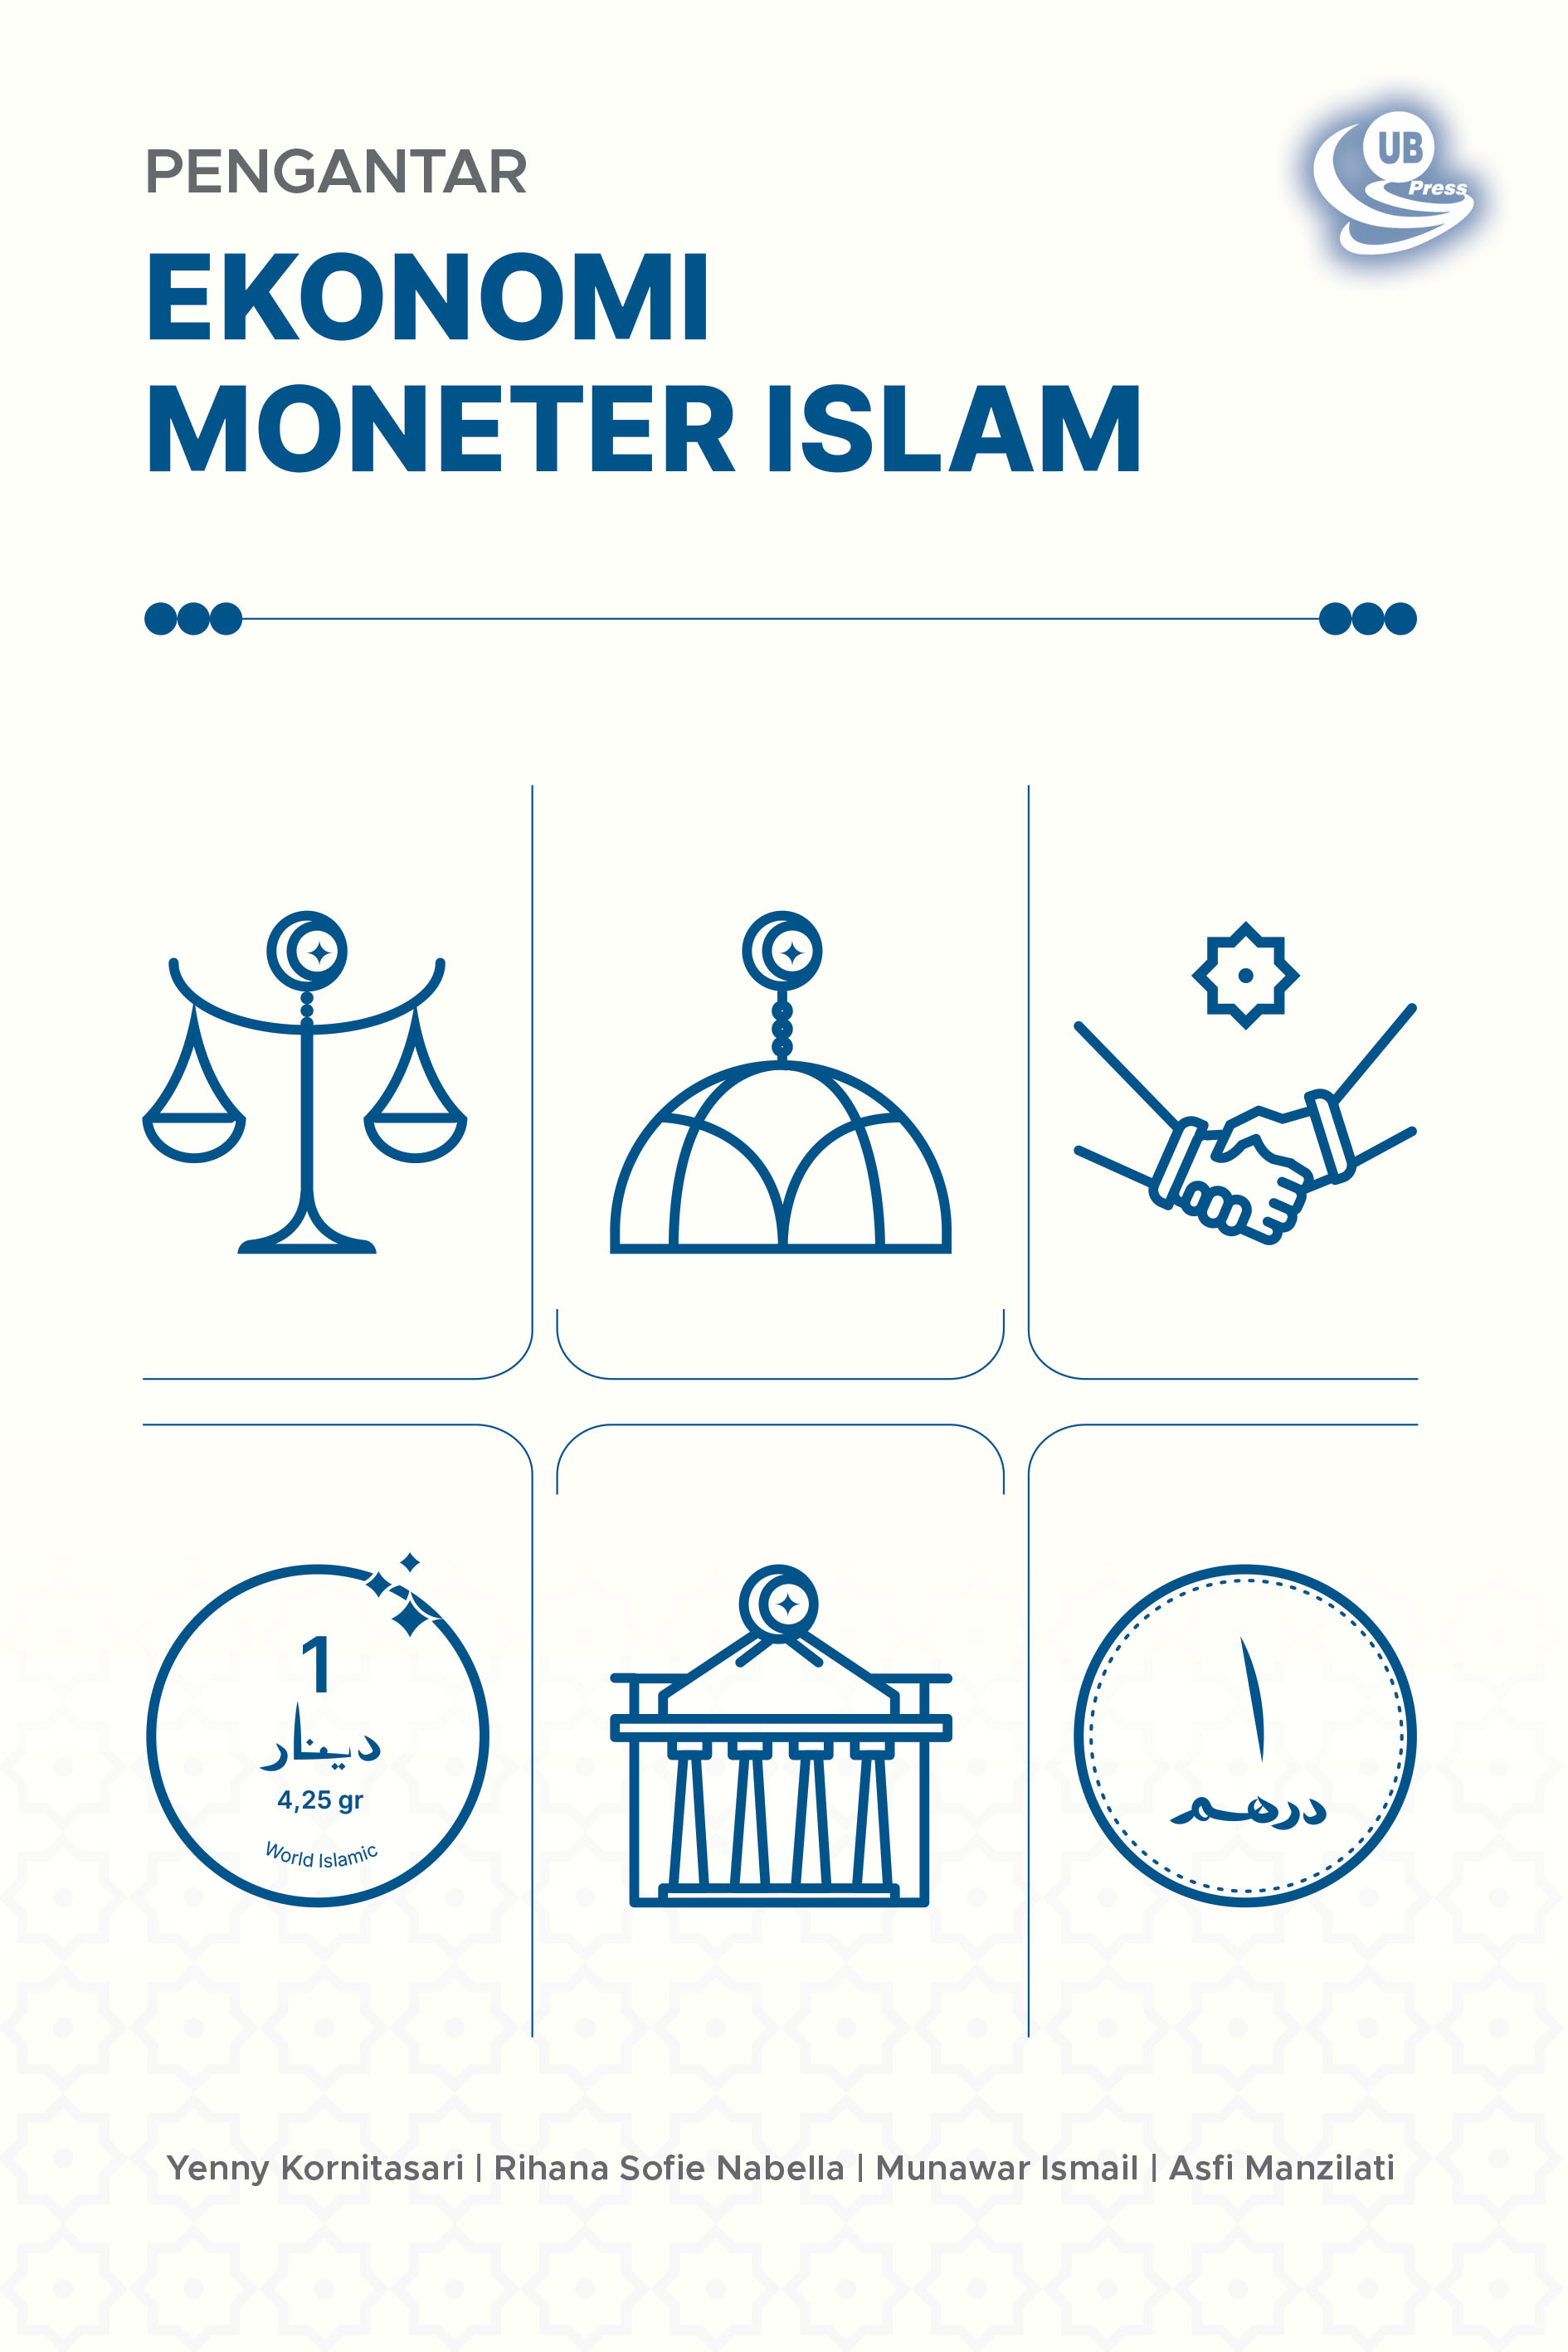 Pengantar ekonomi moneter Islam [sumber elektronis]